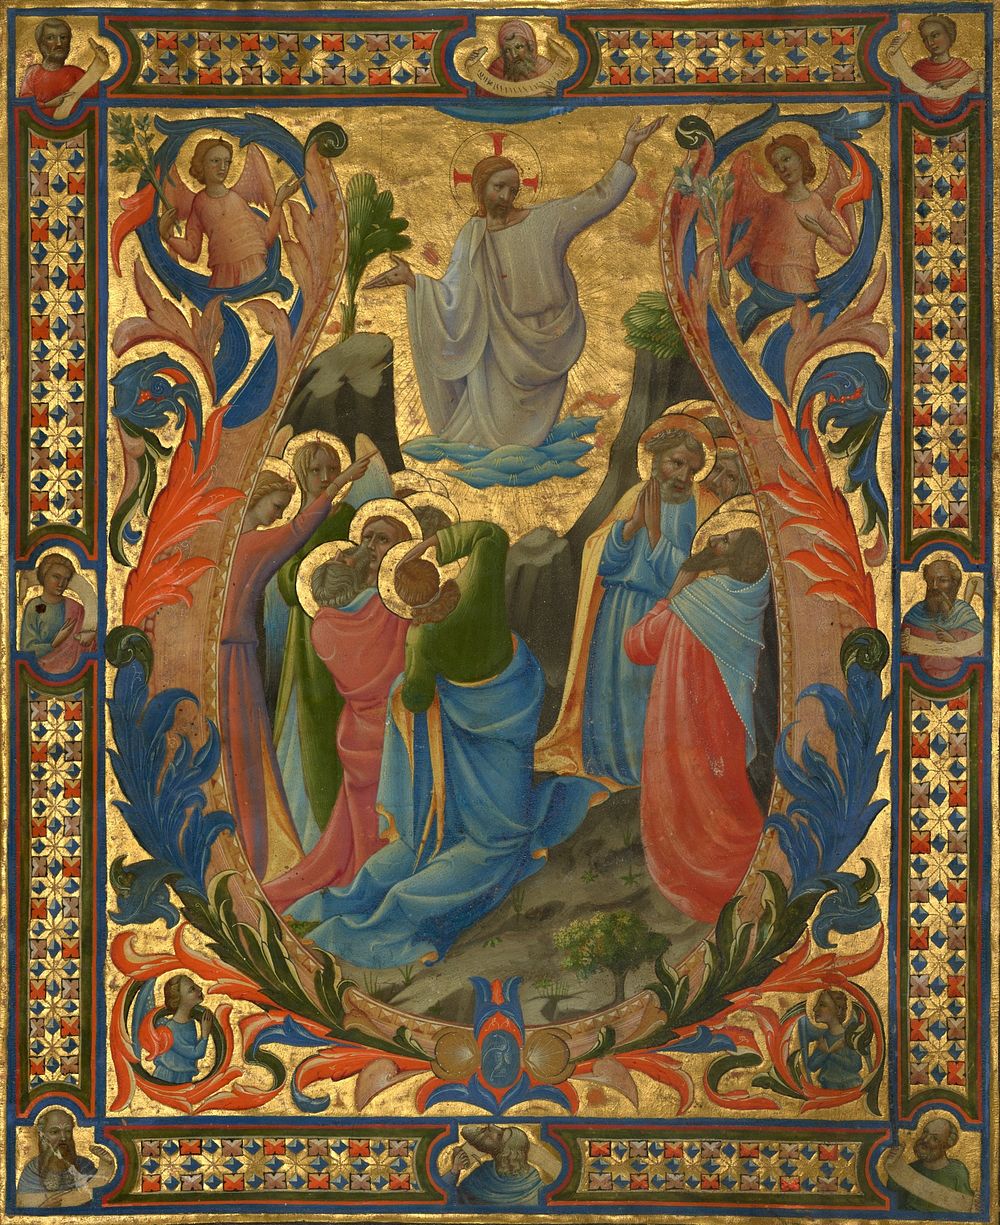 Initial V: The Ascension by Lorenzo Monaco, Zanobi di Benedetto Strozzi and Battista di Biagio Sanguini